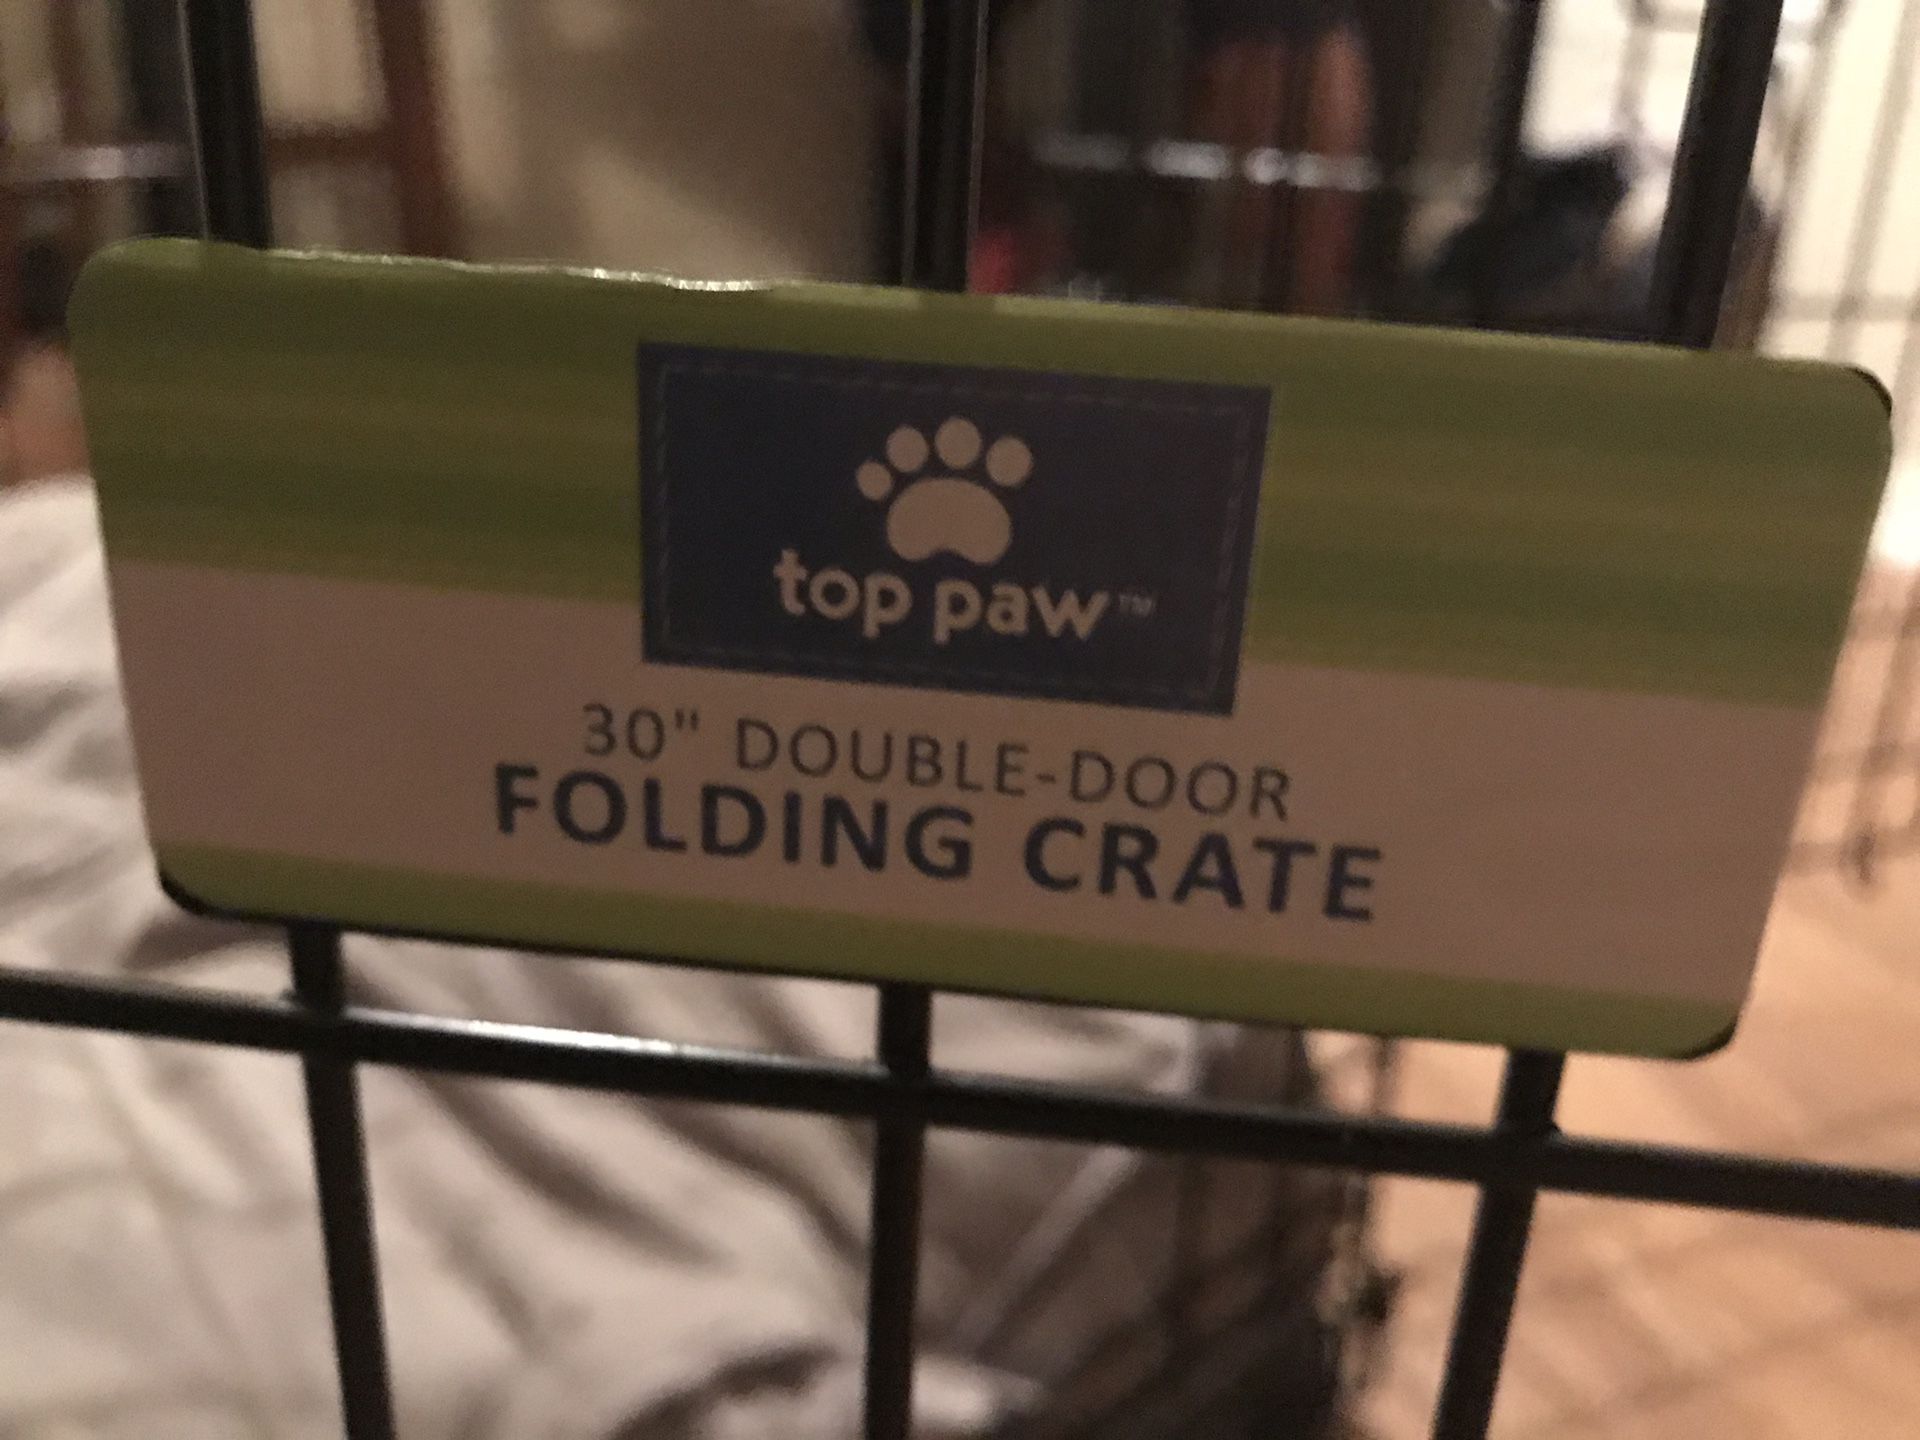 Folding Dog Crate